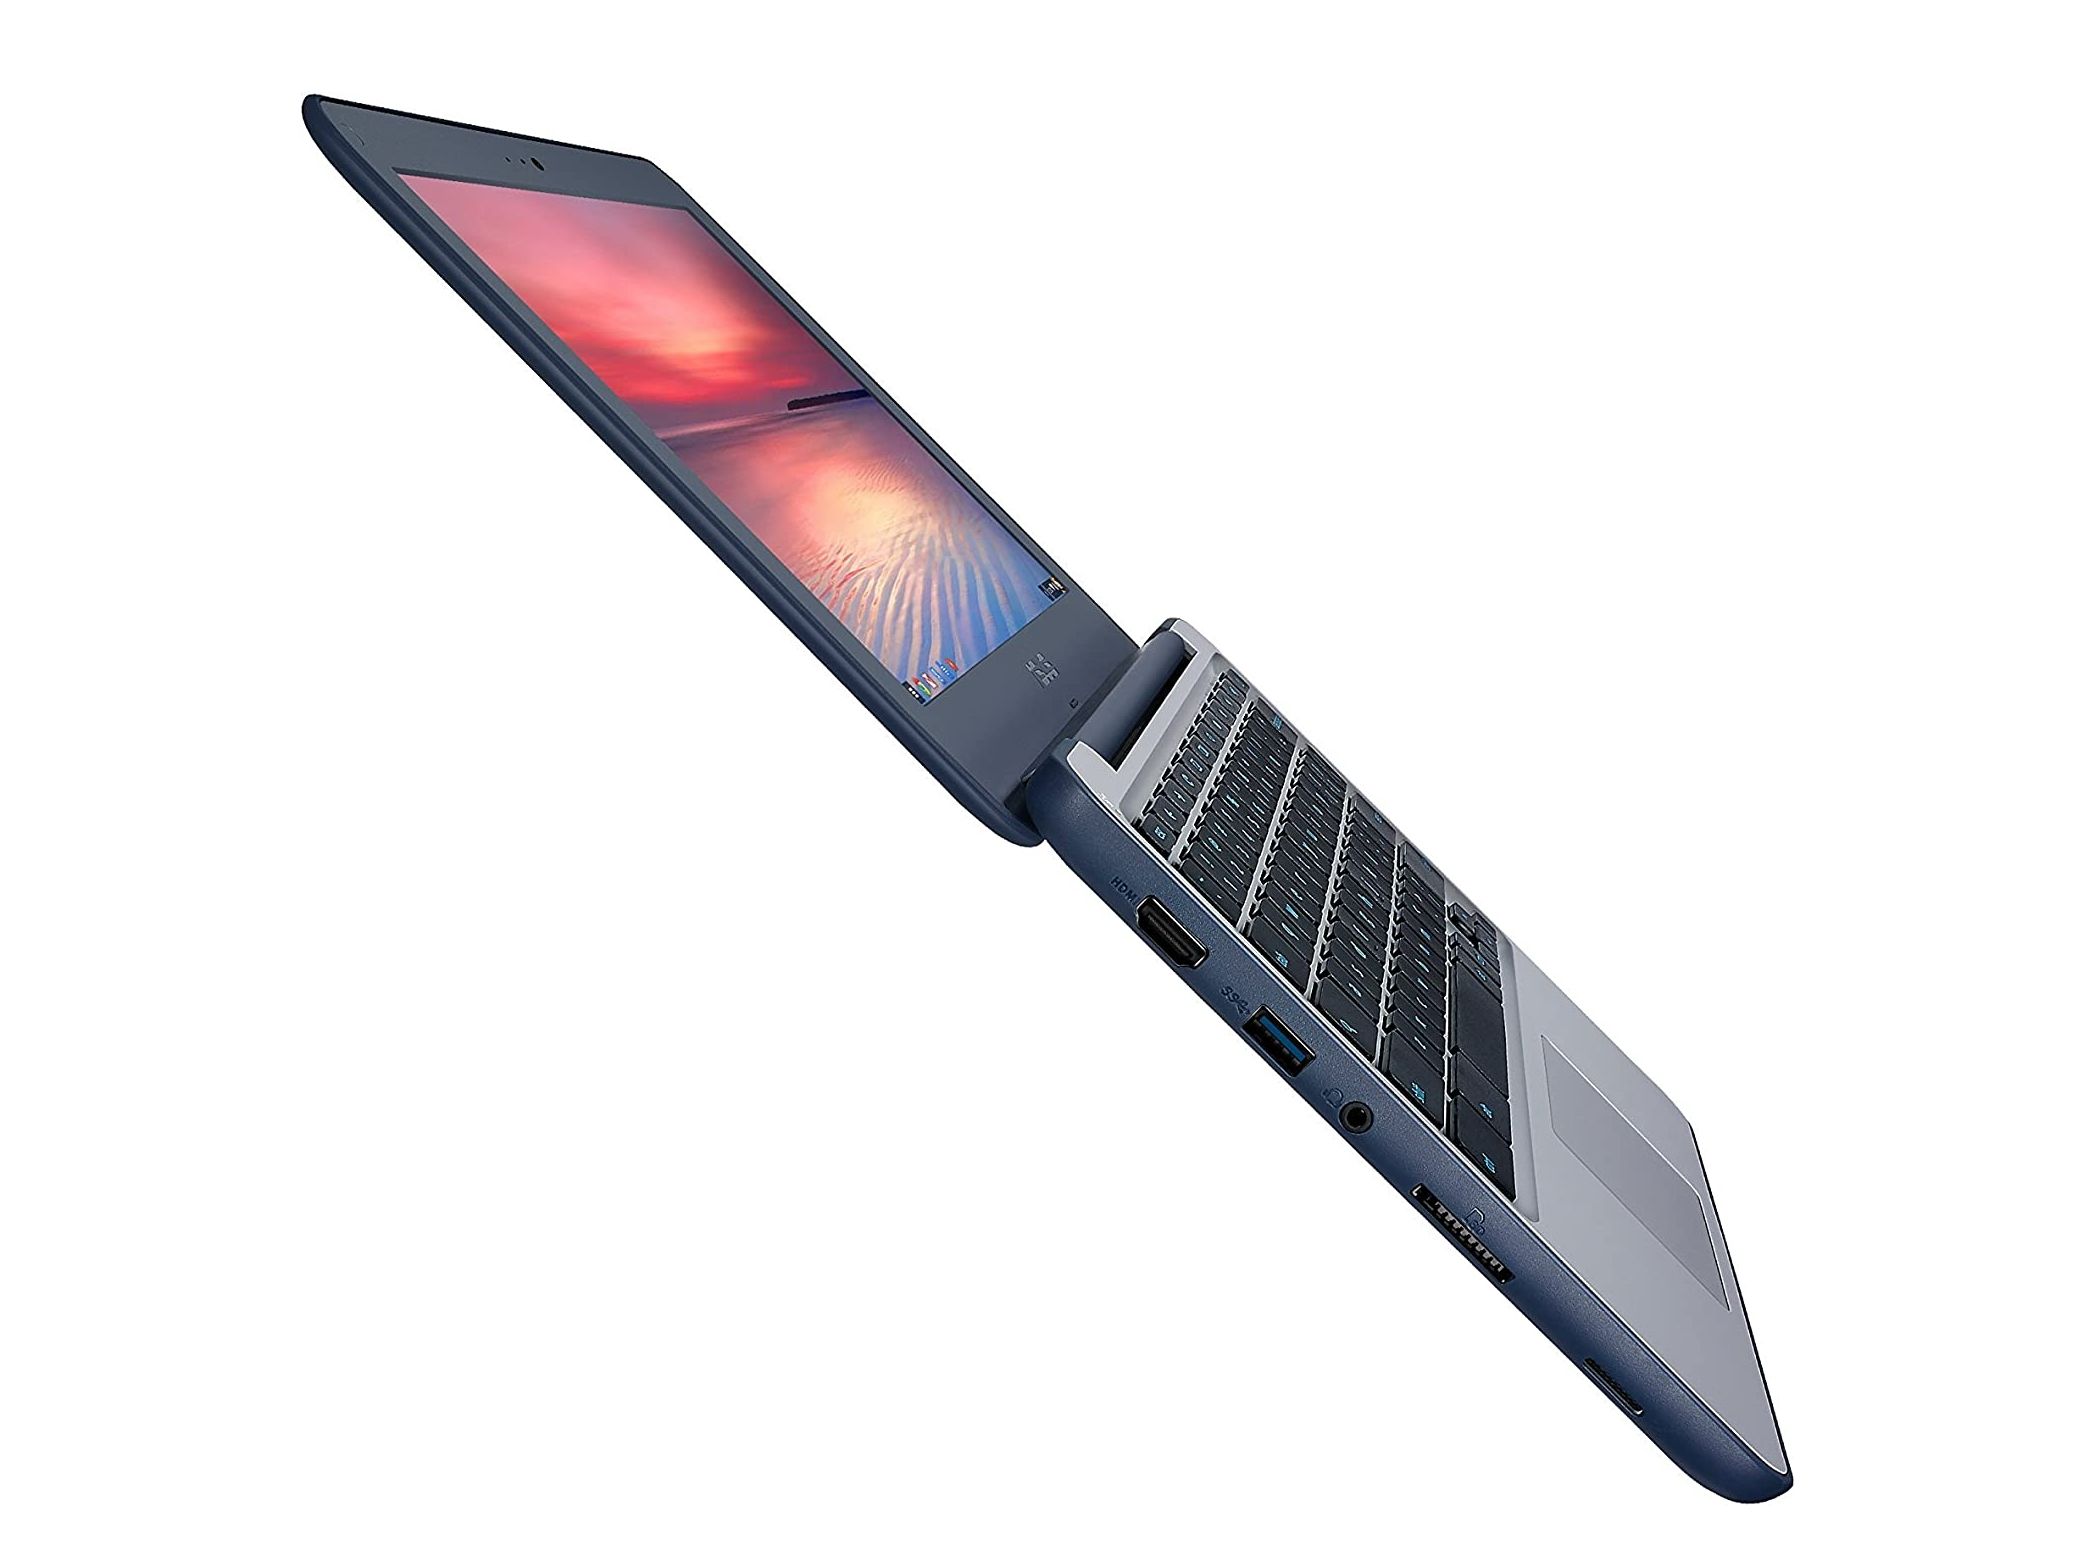 ASUS Chromebook C202SA-YS02 flat hinge